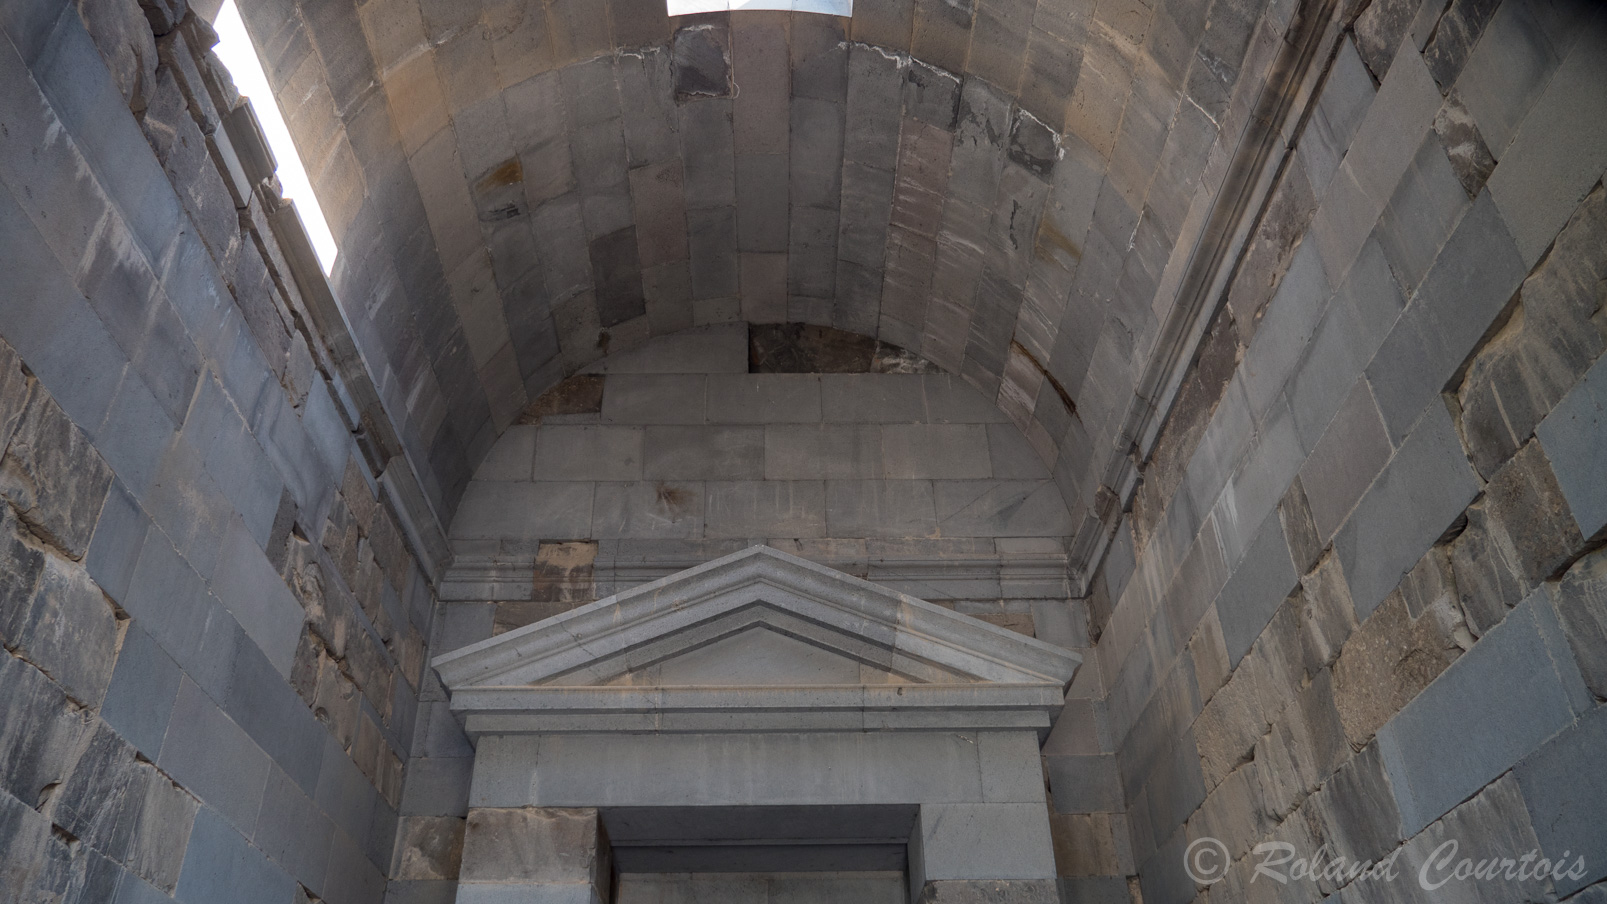 Site de Garni, Temple grec (remis debout dans les années 60) avec en façade 6 colonnes style ionique à tambour avec une architrave et frises. Dans le naos un joueur de dukduk arménien, Voskan Vardanyan